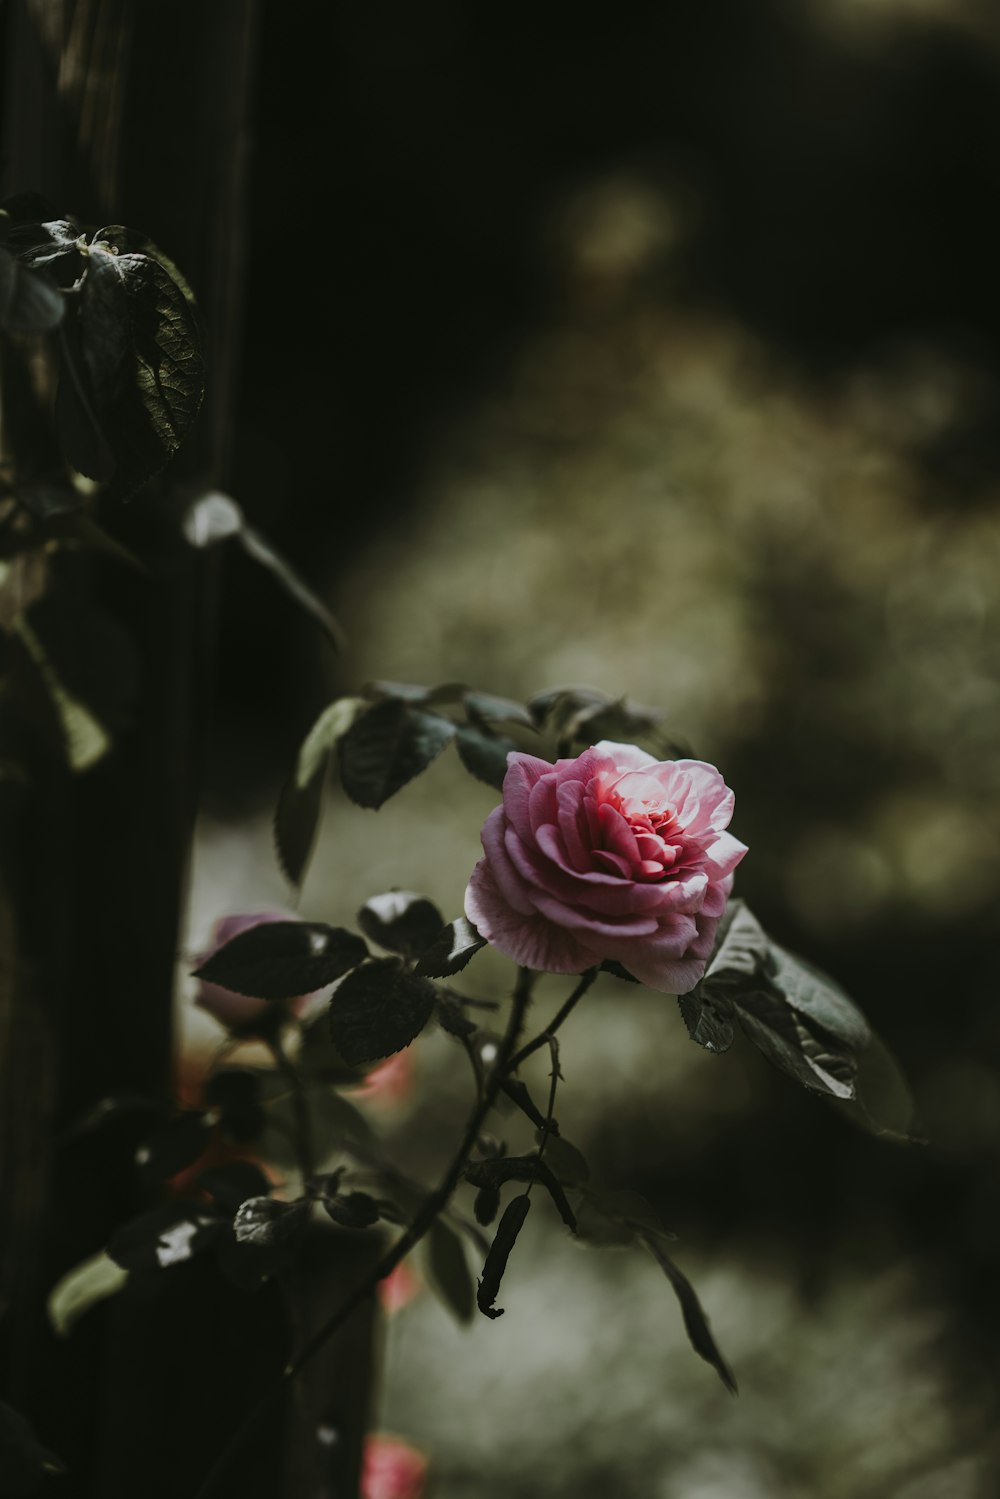 Photographie sélective de la rose rose